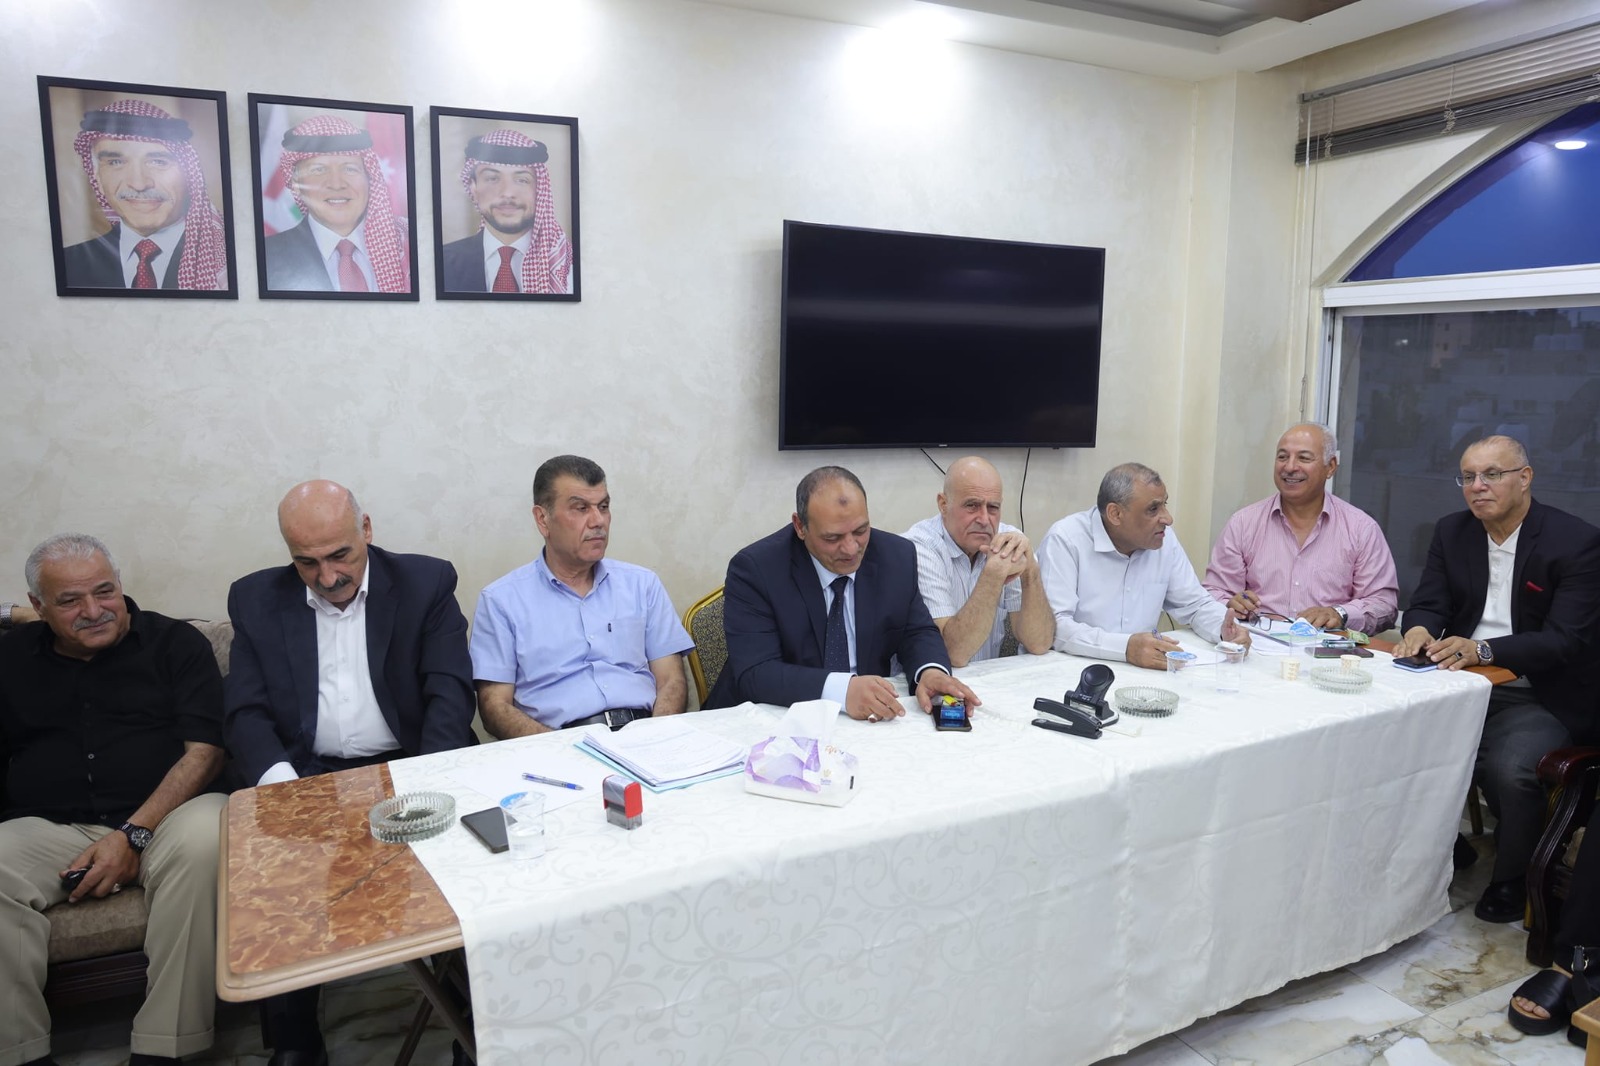    "سنابل اليرموك" تنتخب هيئتها الإدارية فوز الهيئة الإدارية لسنابل اليرموك بالتزكية